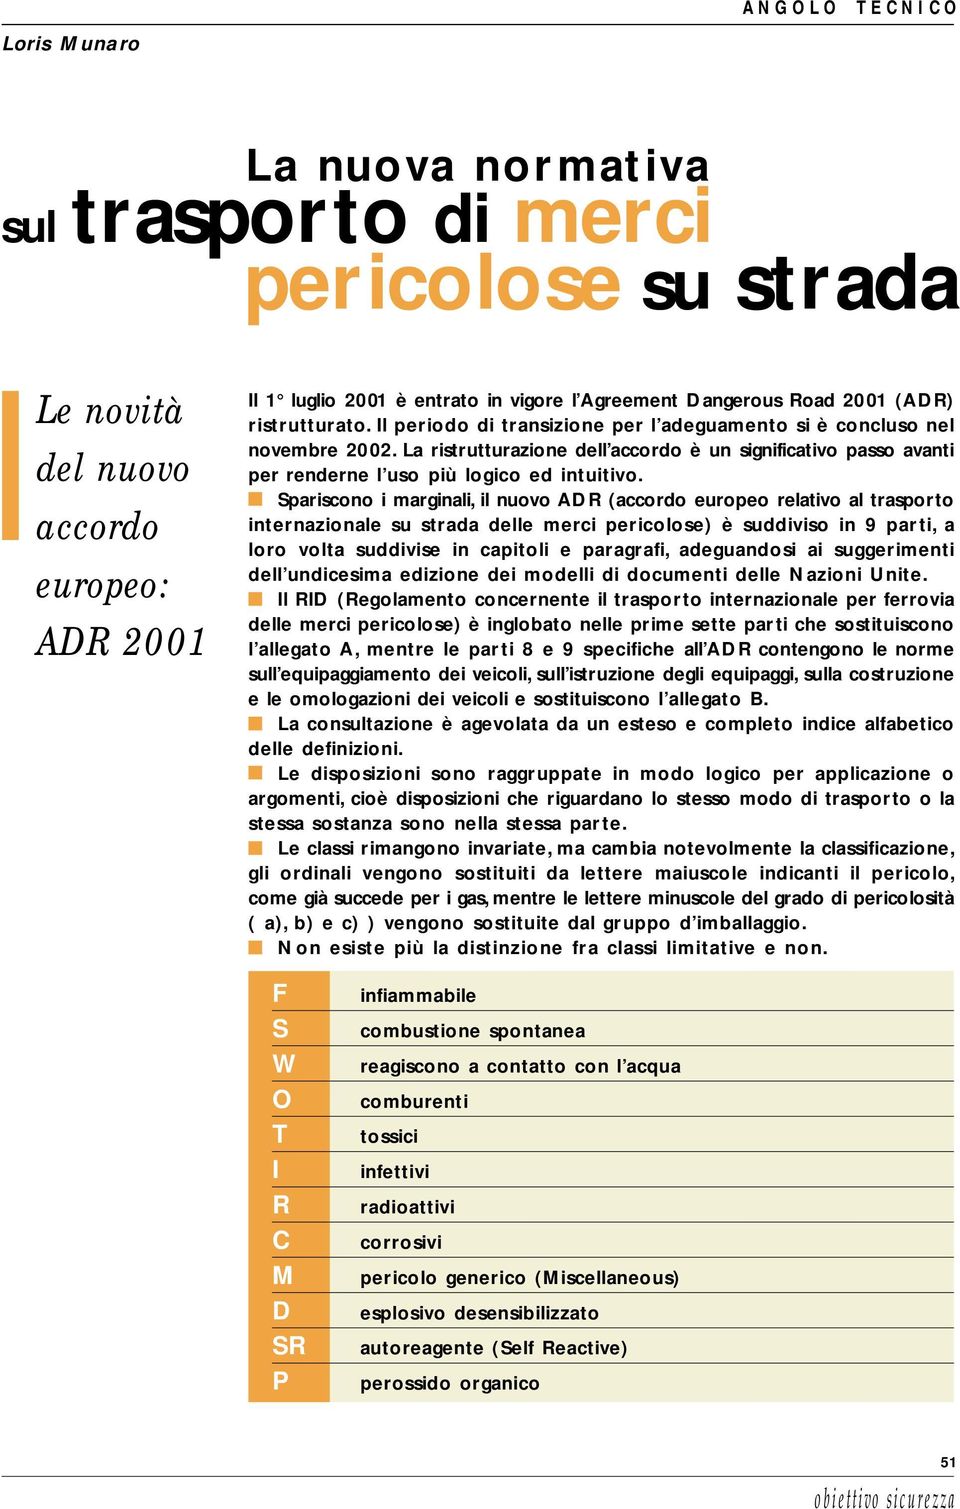 Spariscono i marginali, il nuovo ADR (accordo europeo relativo al trasporto internazionale su strada delle merci pericolose) è suddiviso in 9 parti, a loro volta suddivise in capitoli e paragrafi,